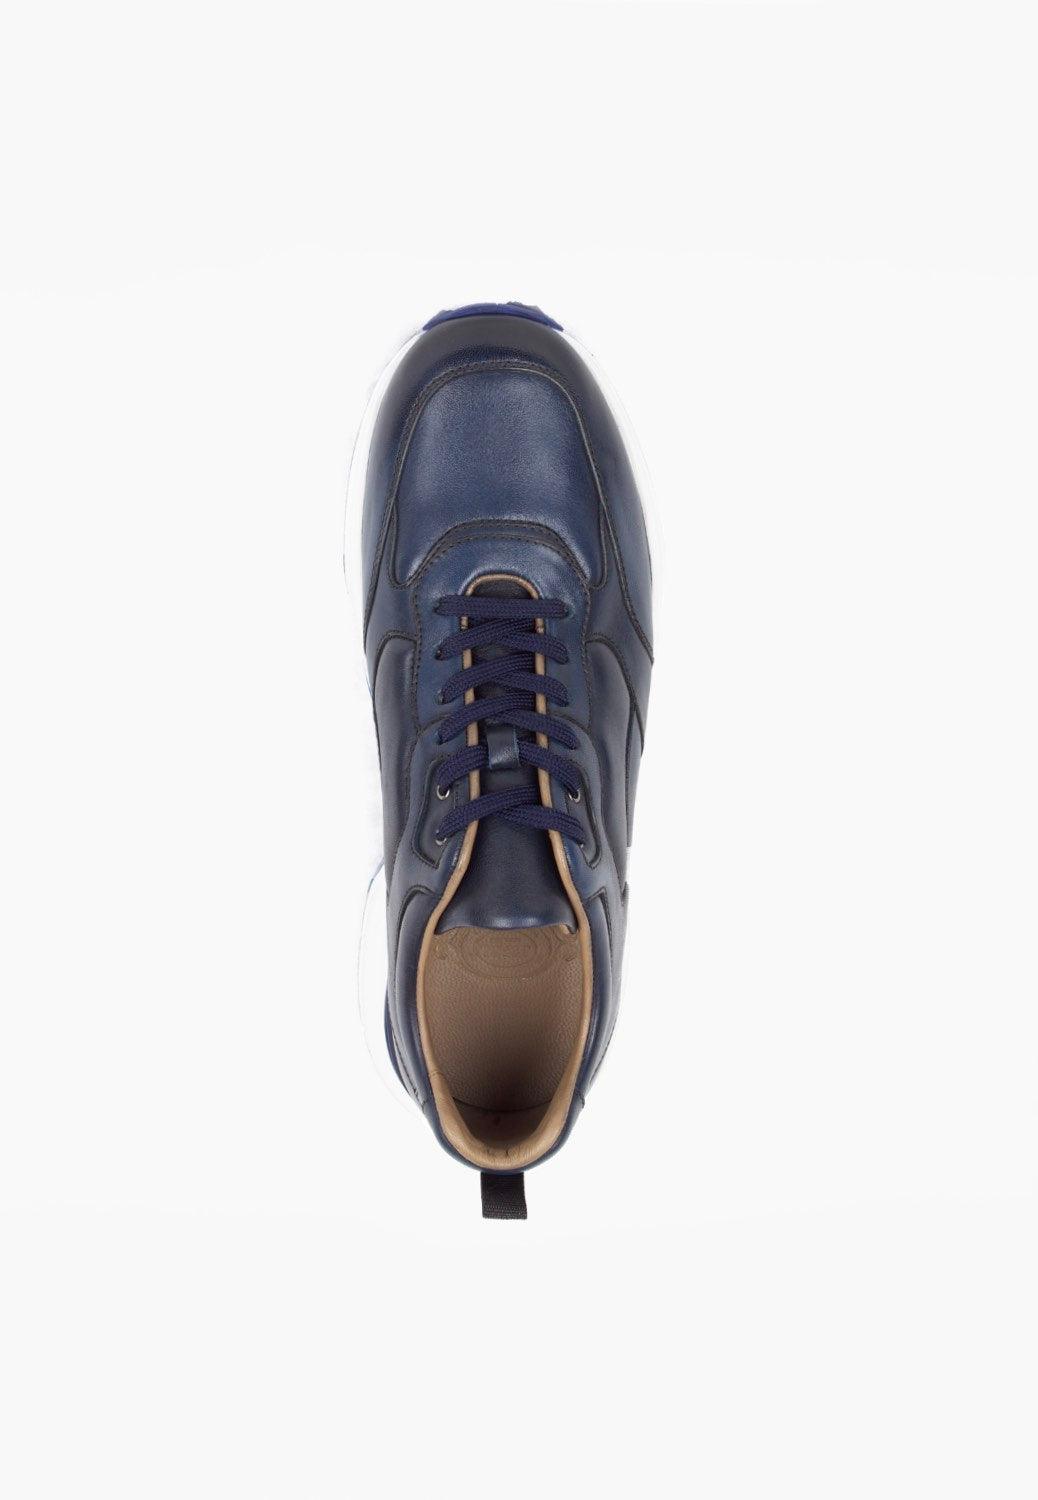 Ultrecht Sneaker Navy - SEPOL Shoes